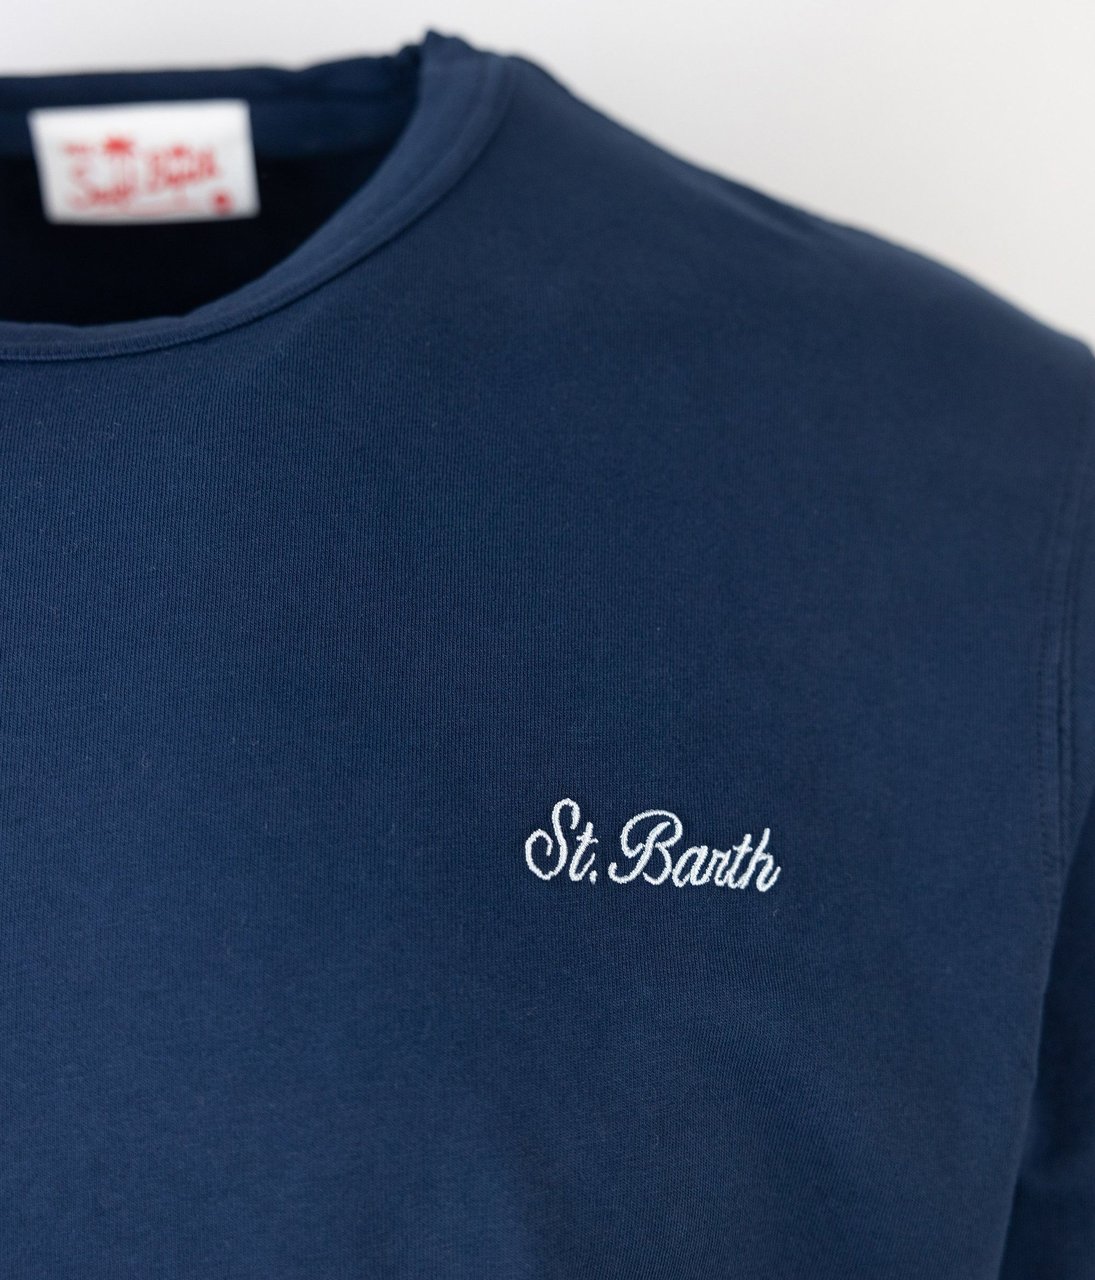 MC2 Saint Barth Saint Barth T-shirts And Polos Blue Blauw